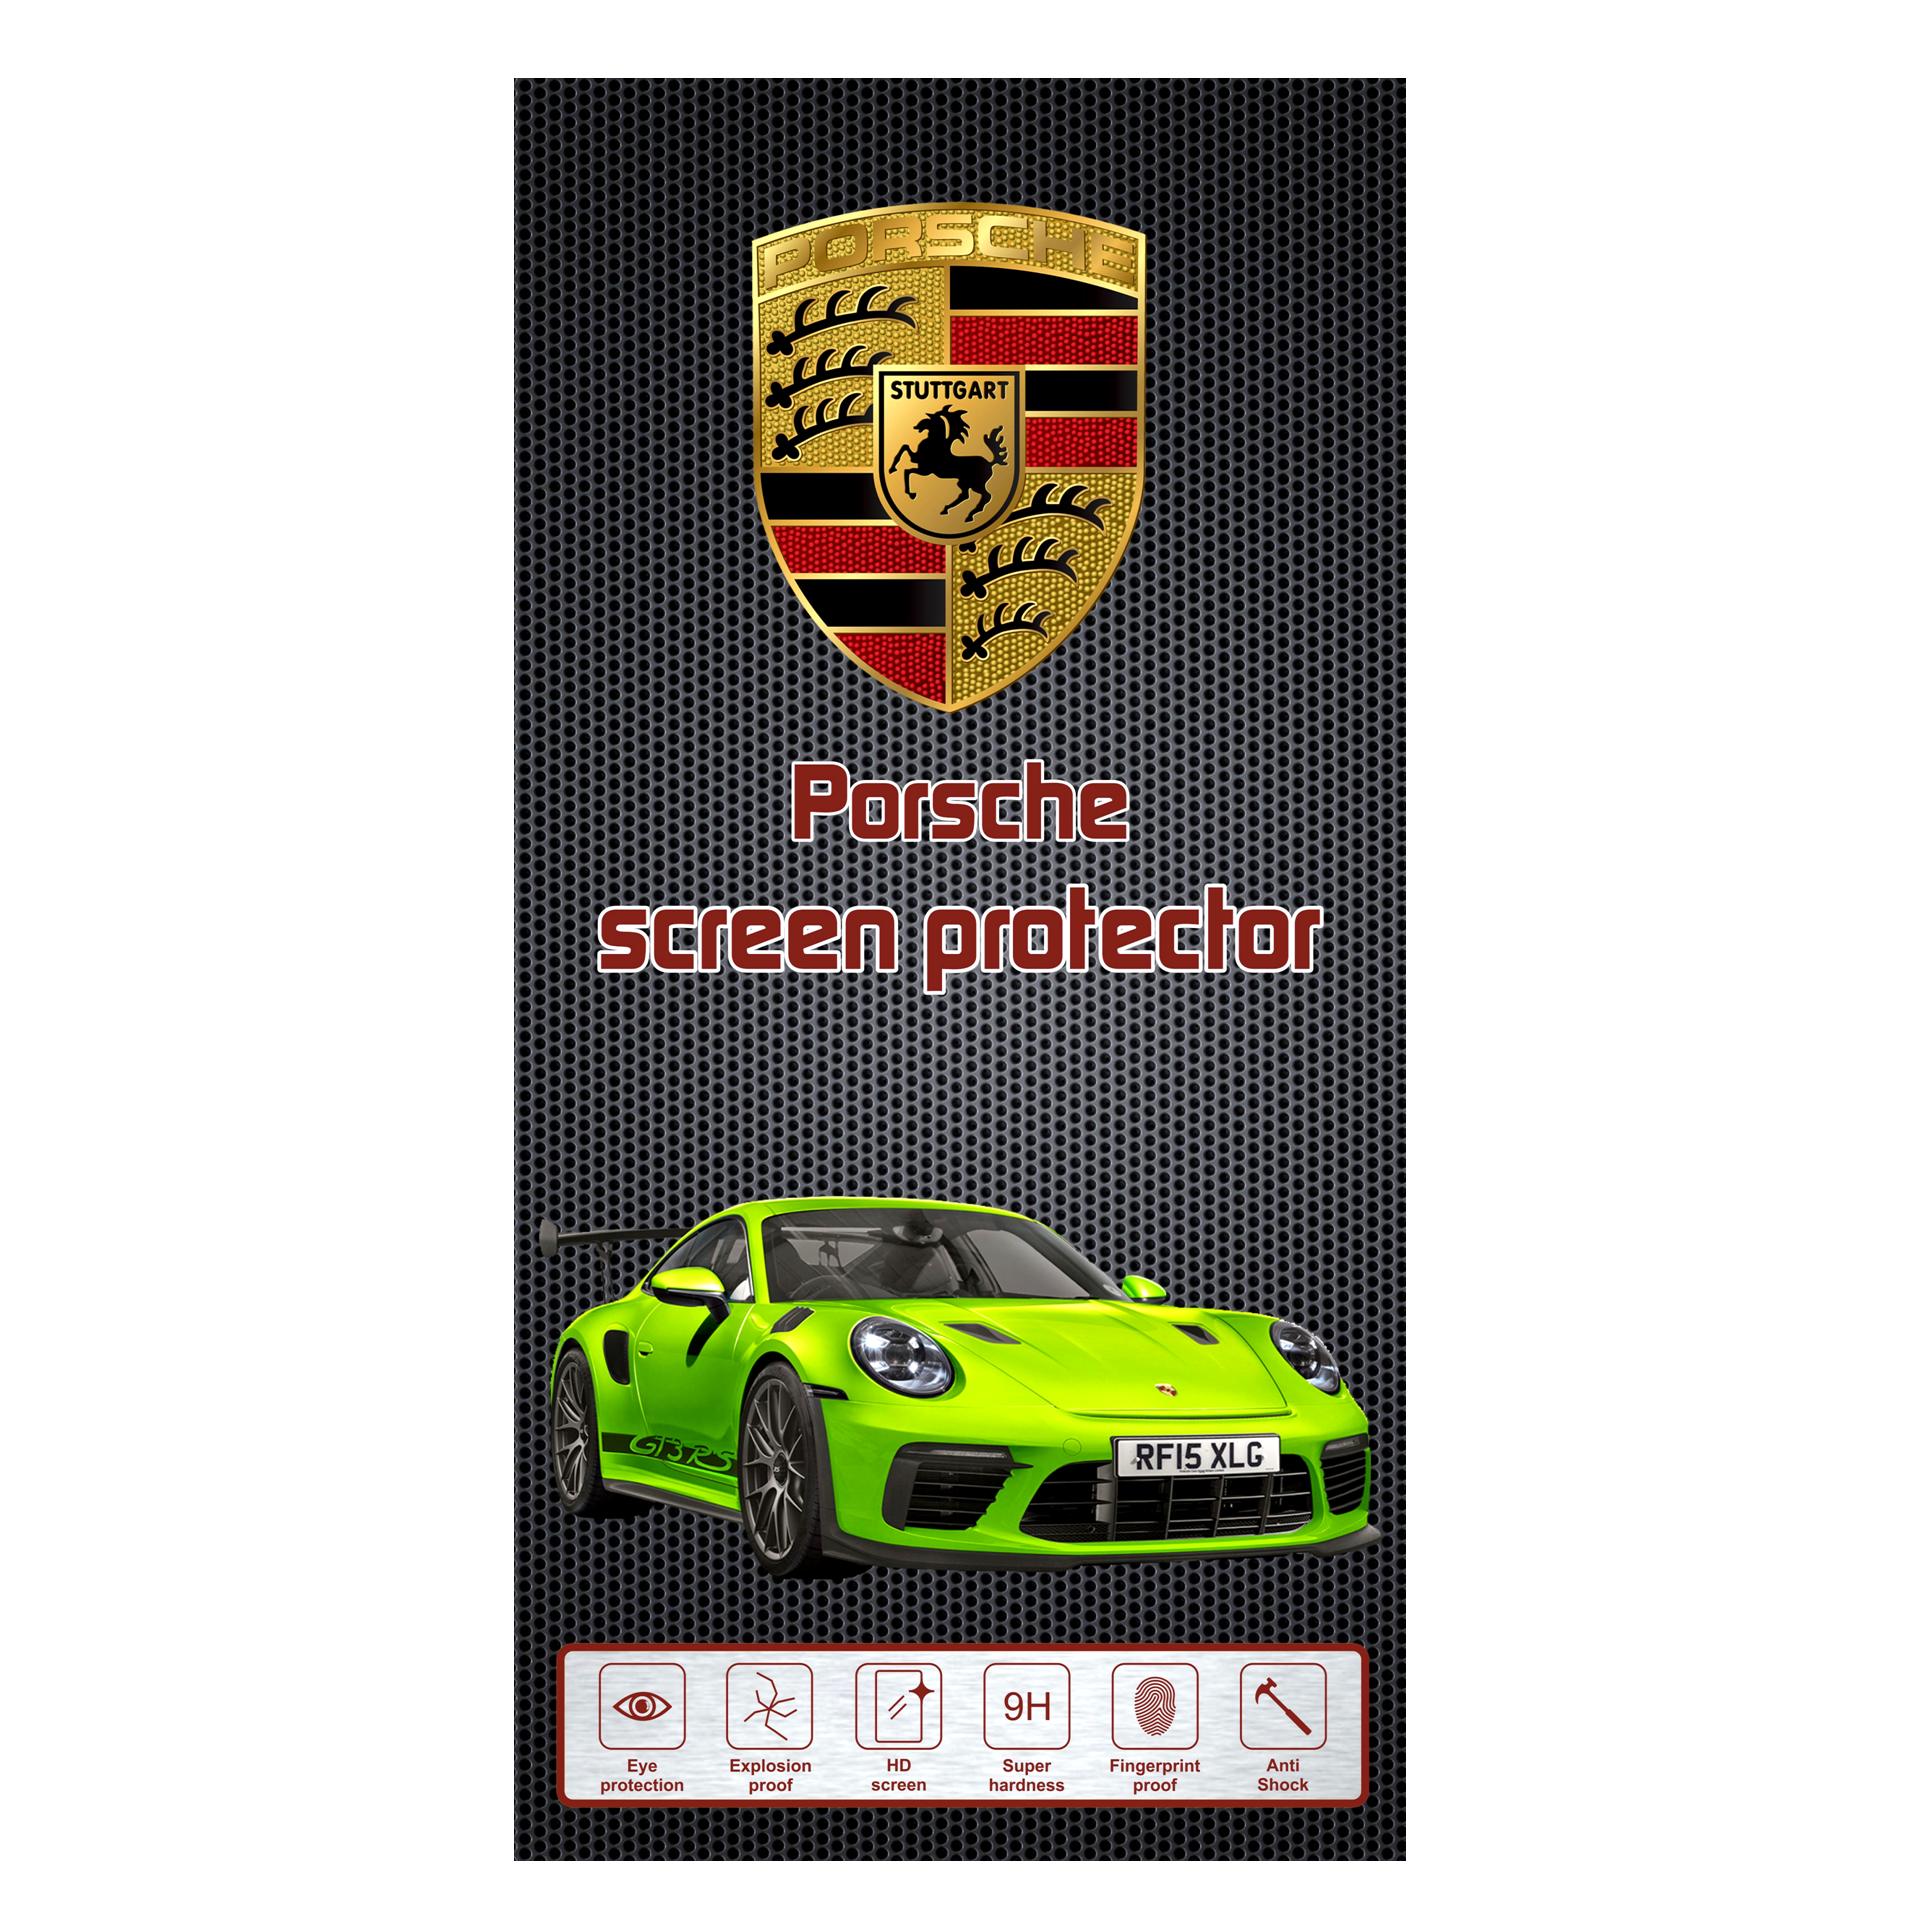 محافظ صفحه نمایش مدل Porsche مناسب برای گوشی موبایل سامسونگ Galaxy J3 Pro / J3110